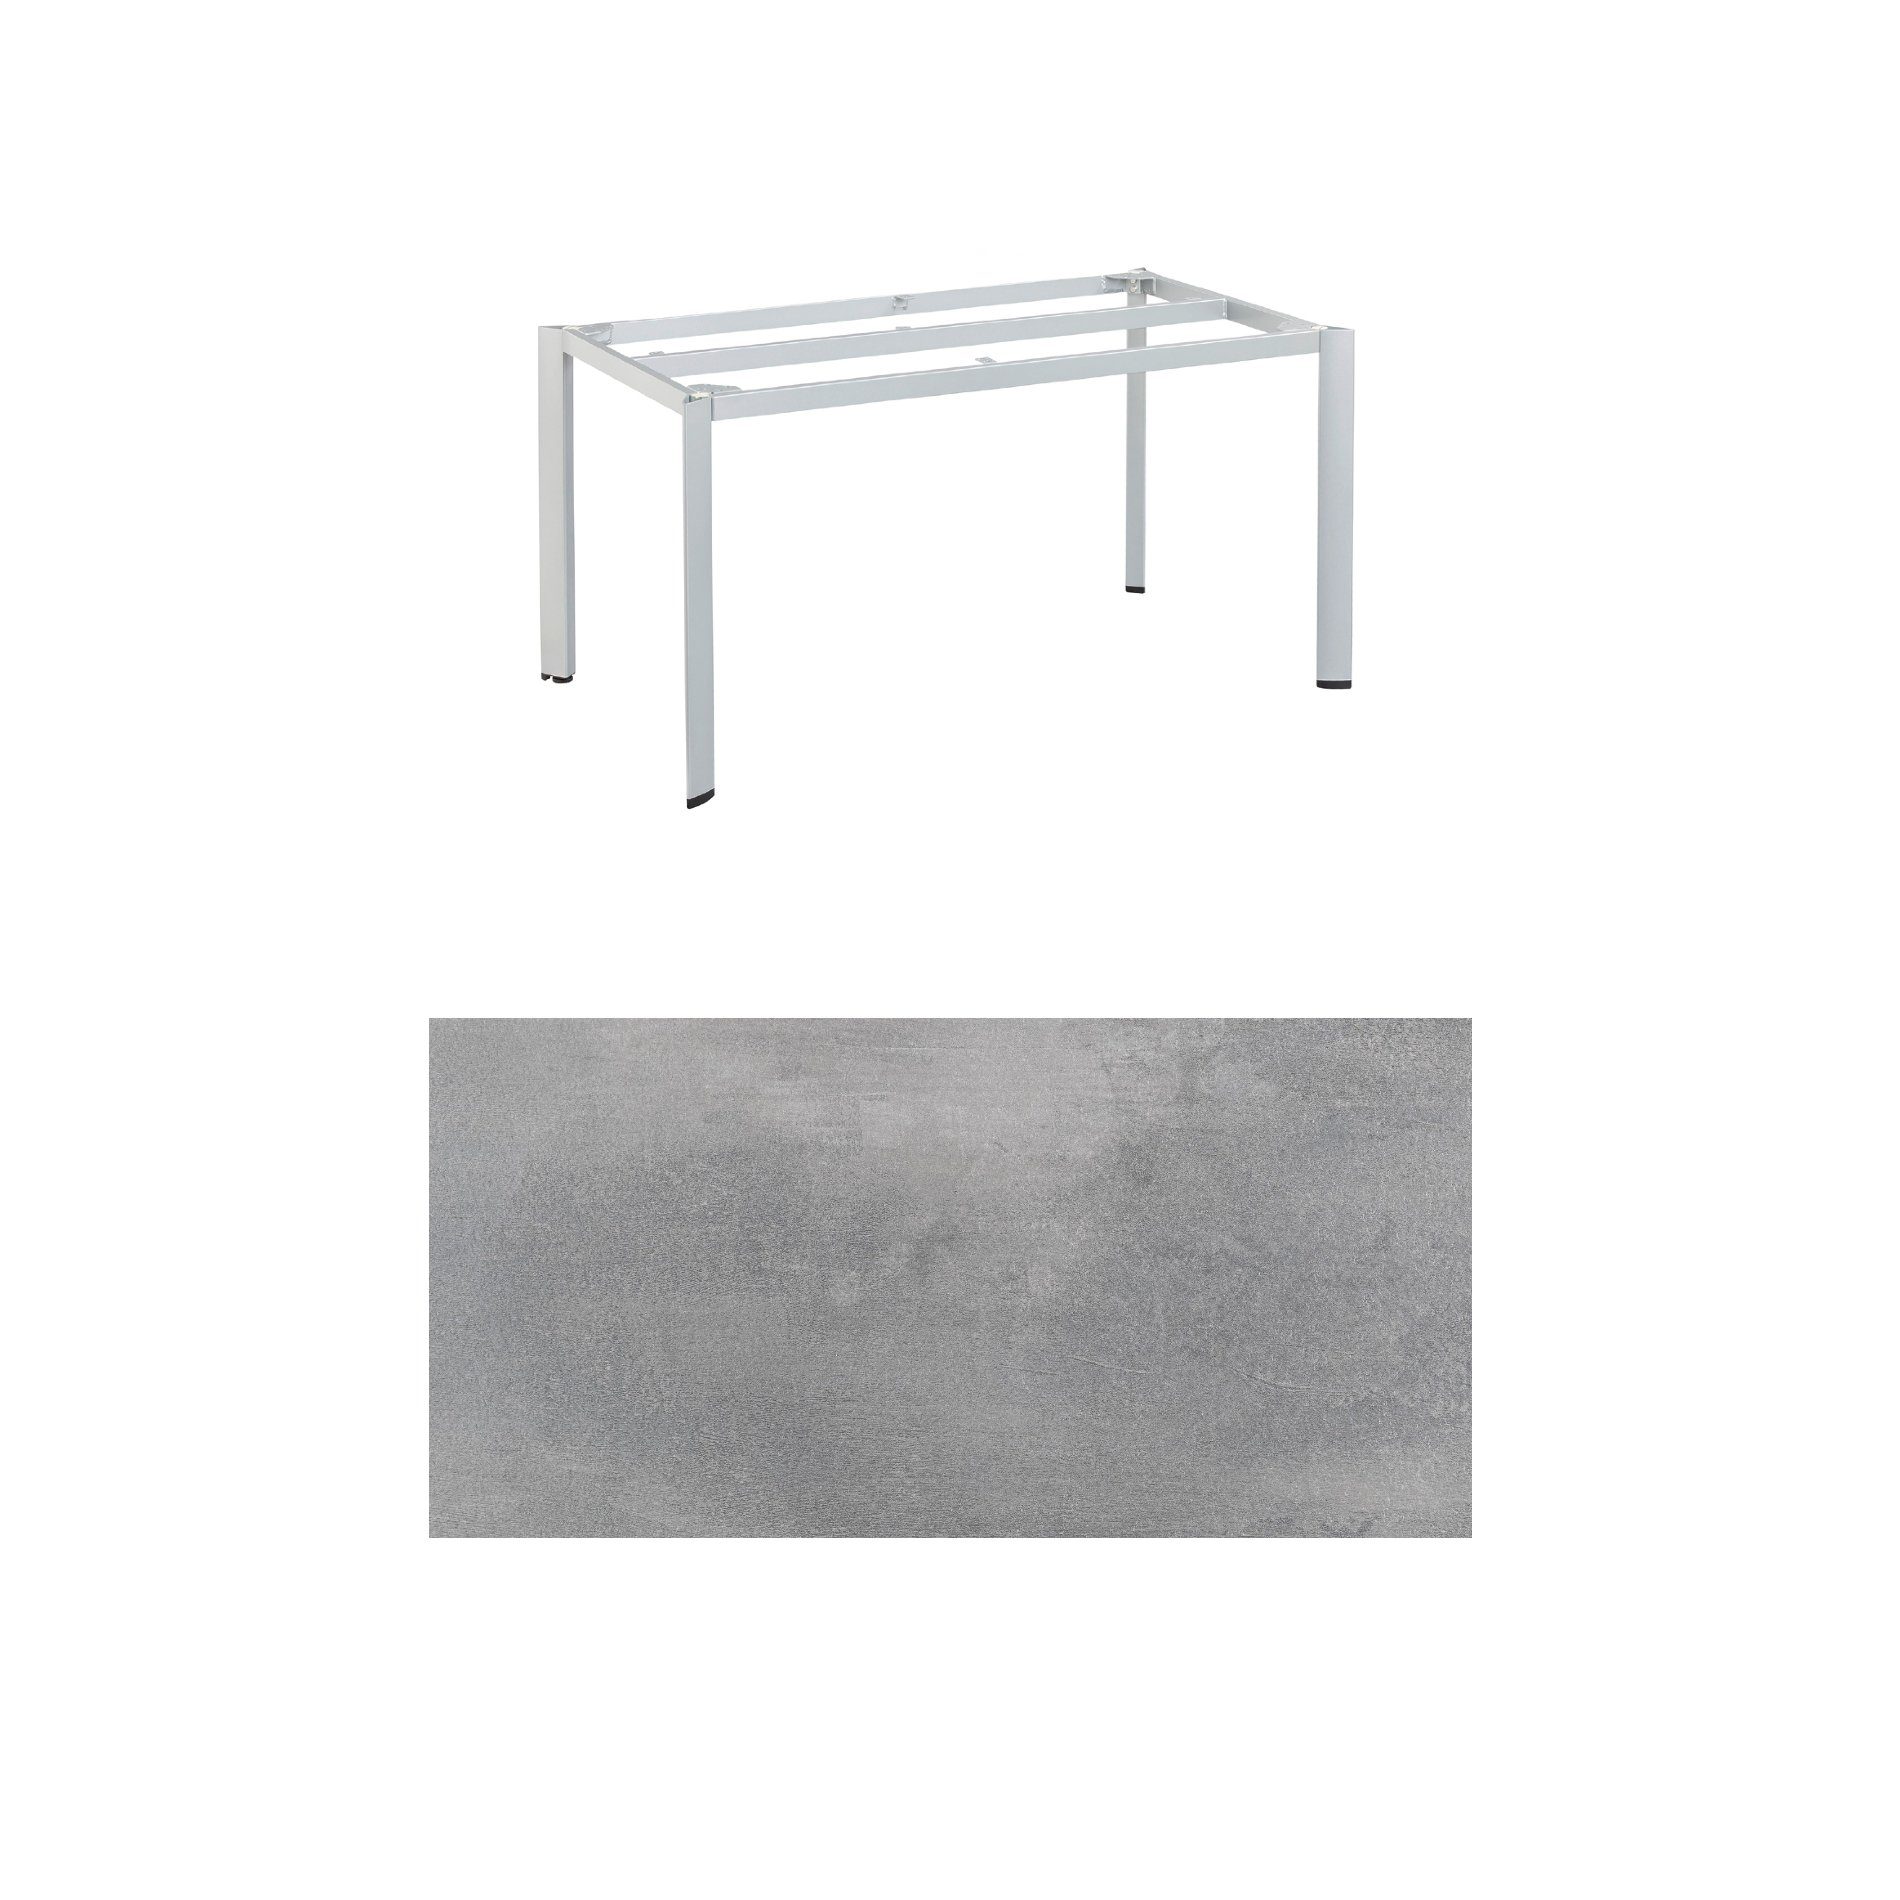 Kettler "Edge" Gartentisch, Gestell Aluminium silber, Tischplatte HPL silber-grau, 140x70 cm